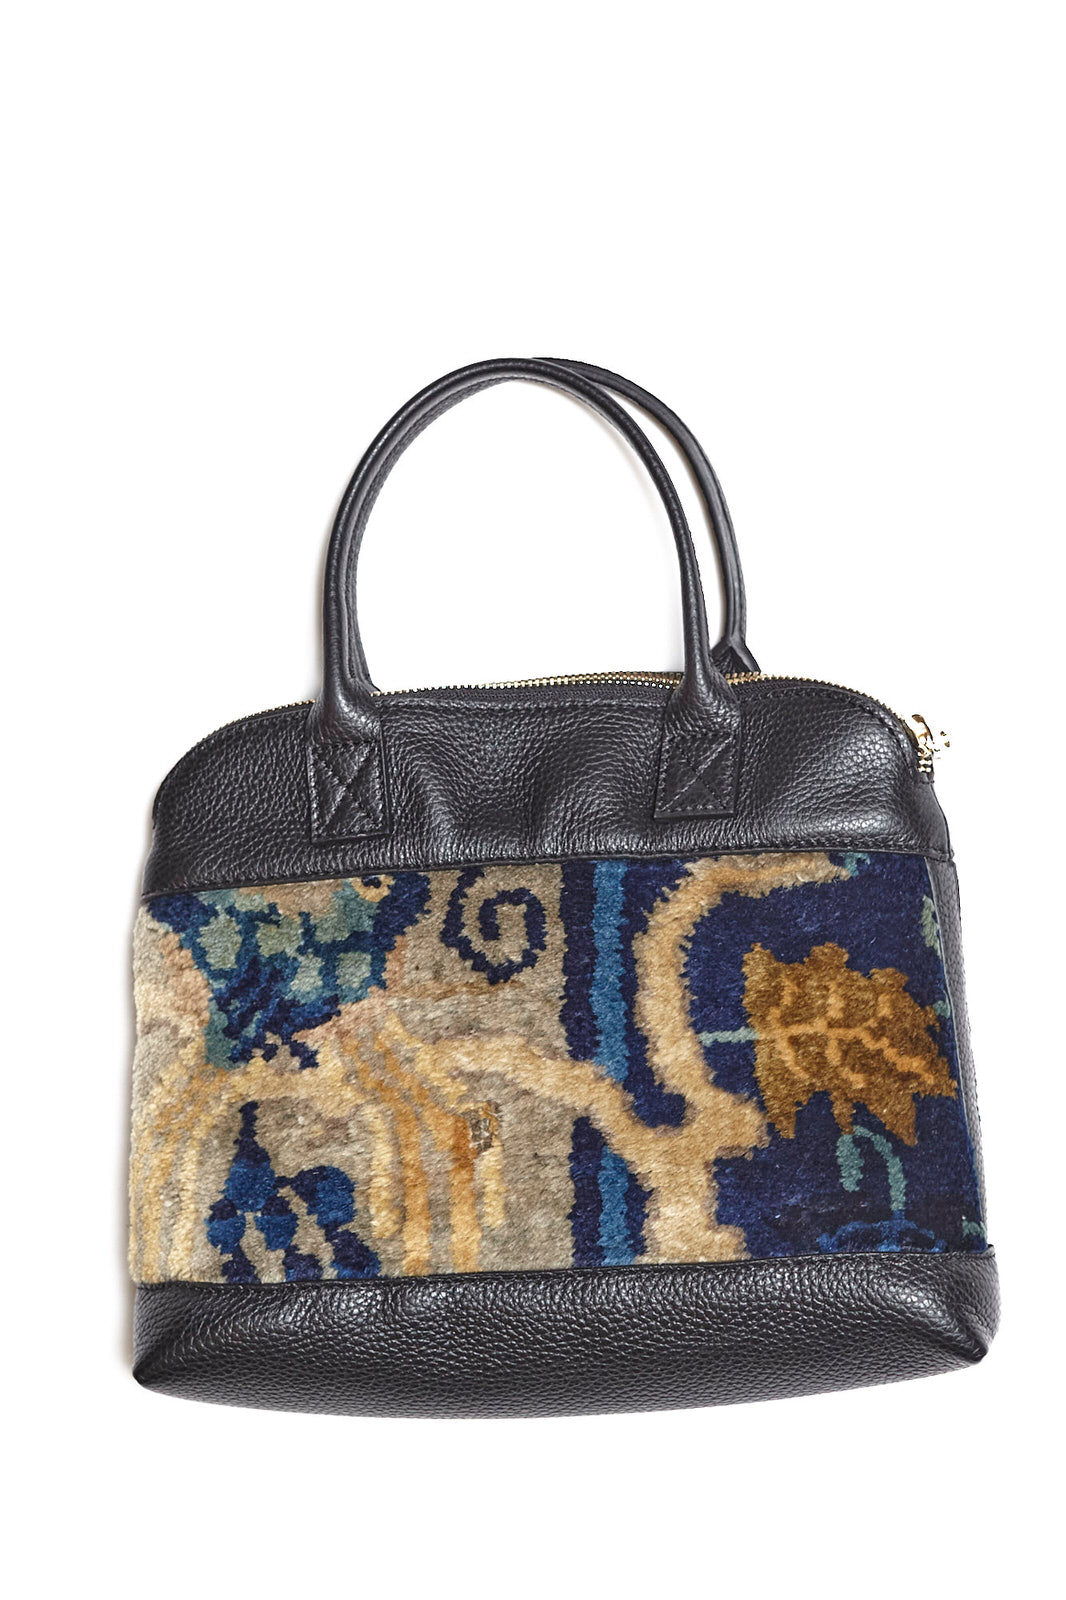 King Kennedy Isadora Handbag - 00025